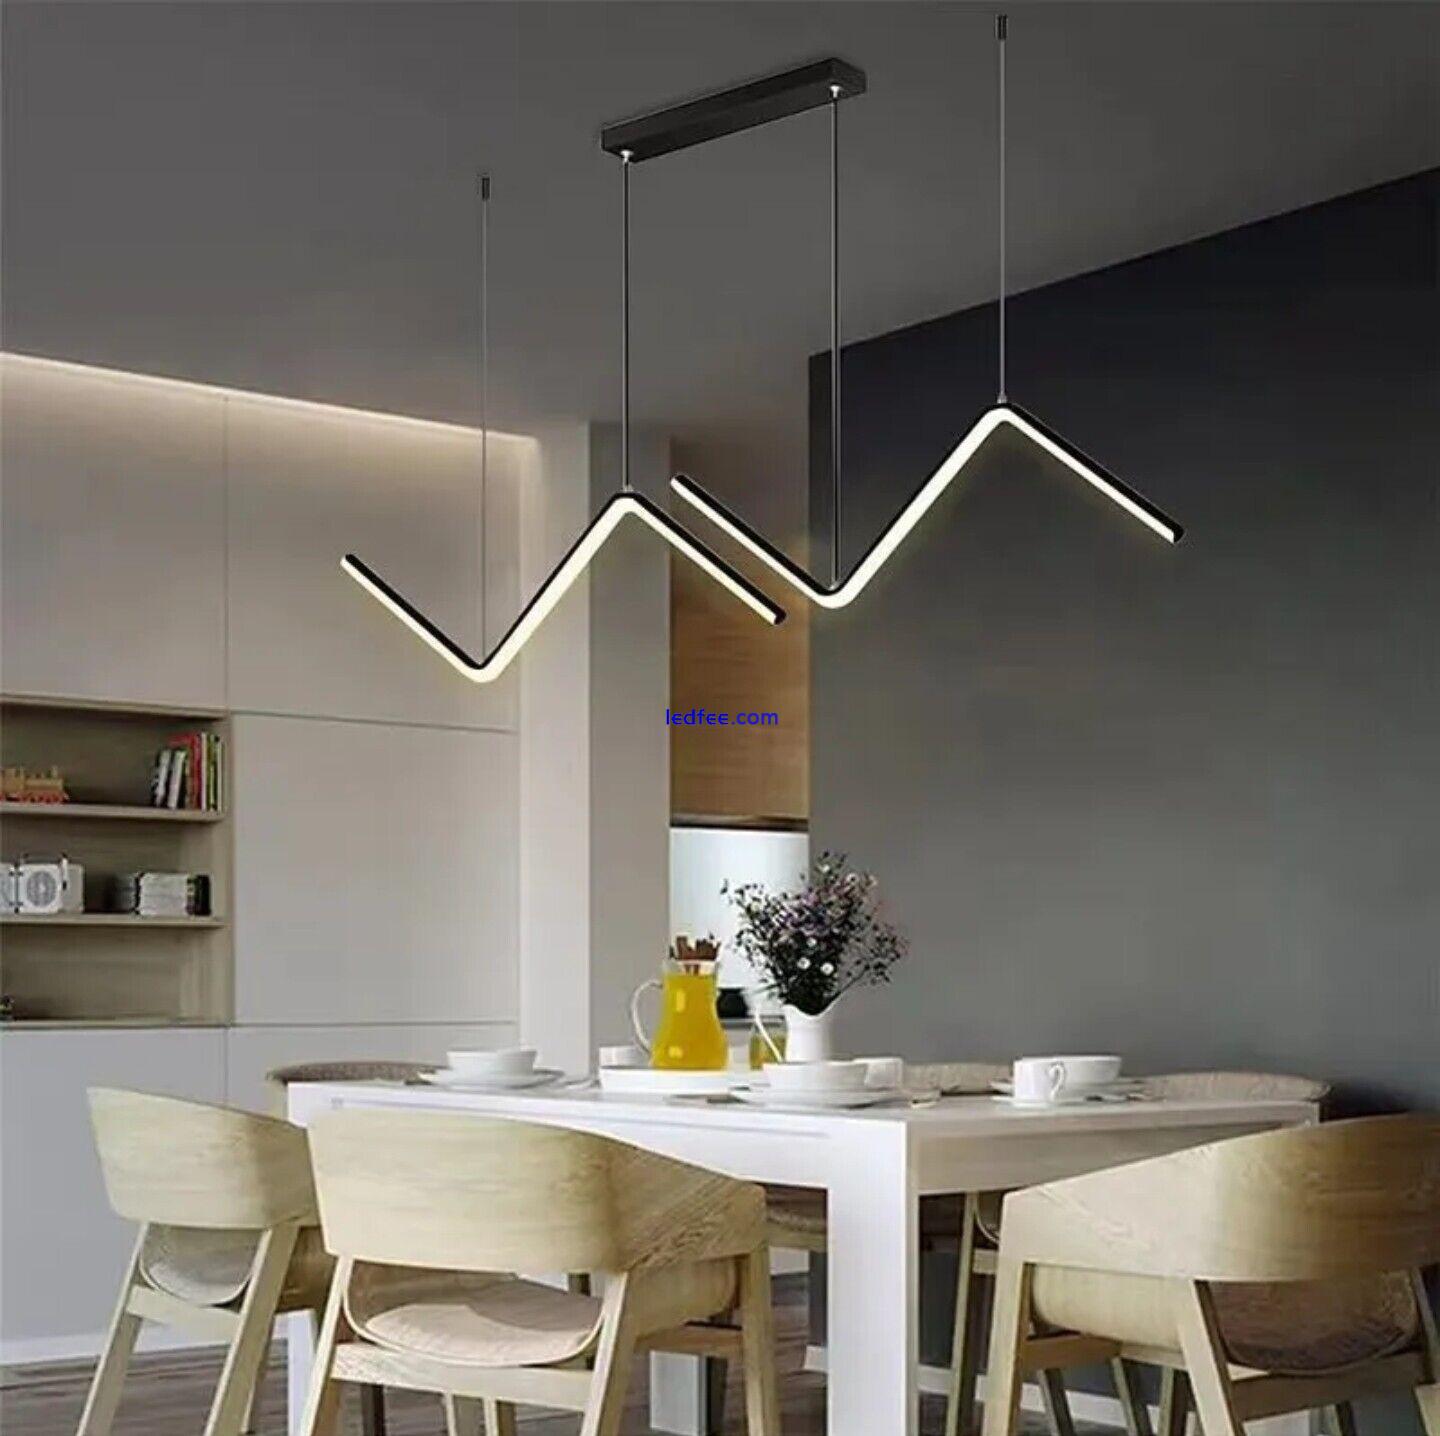 Modern Led Ceiling Chandelier for Table Dining Room Kitchen Bar Pendant Lighting 1 